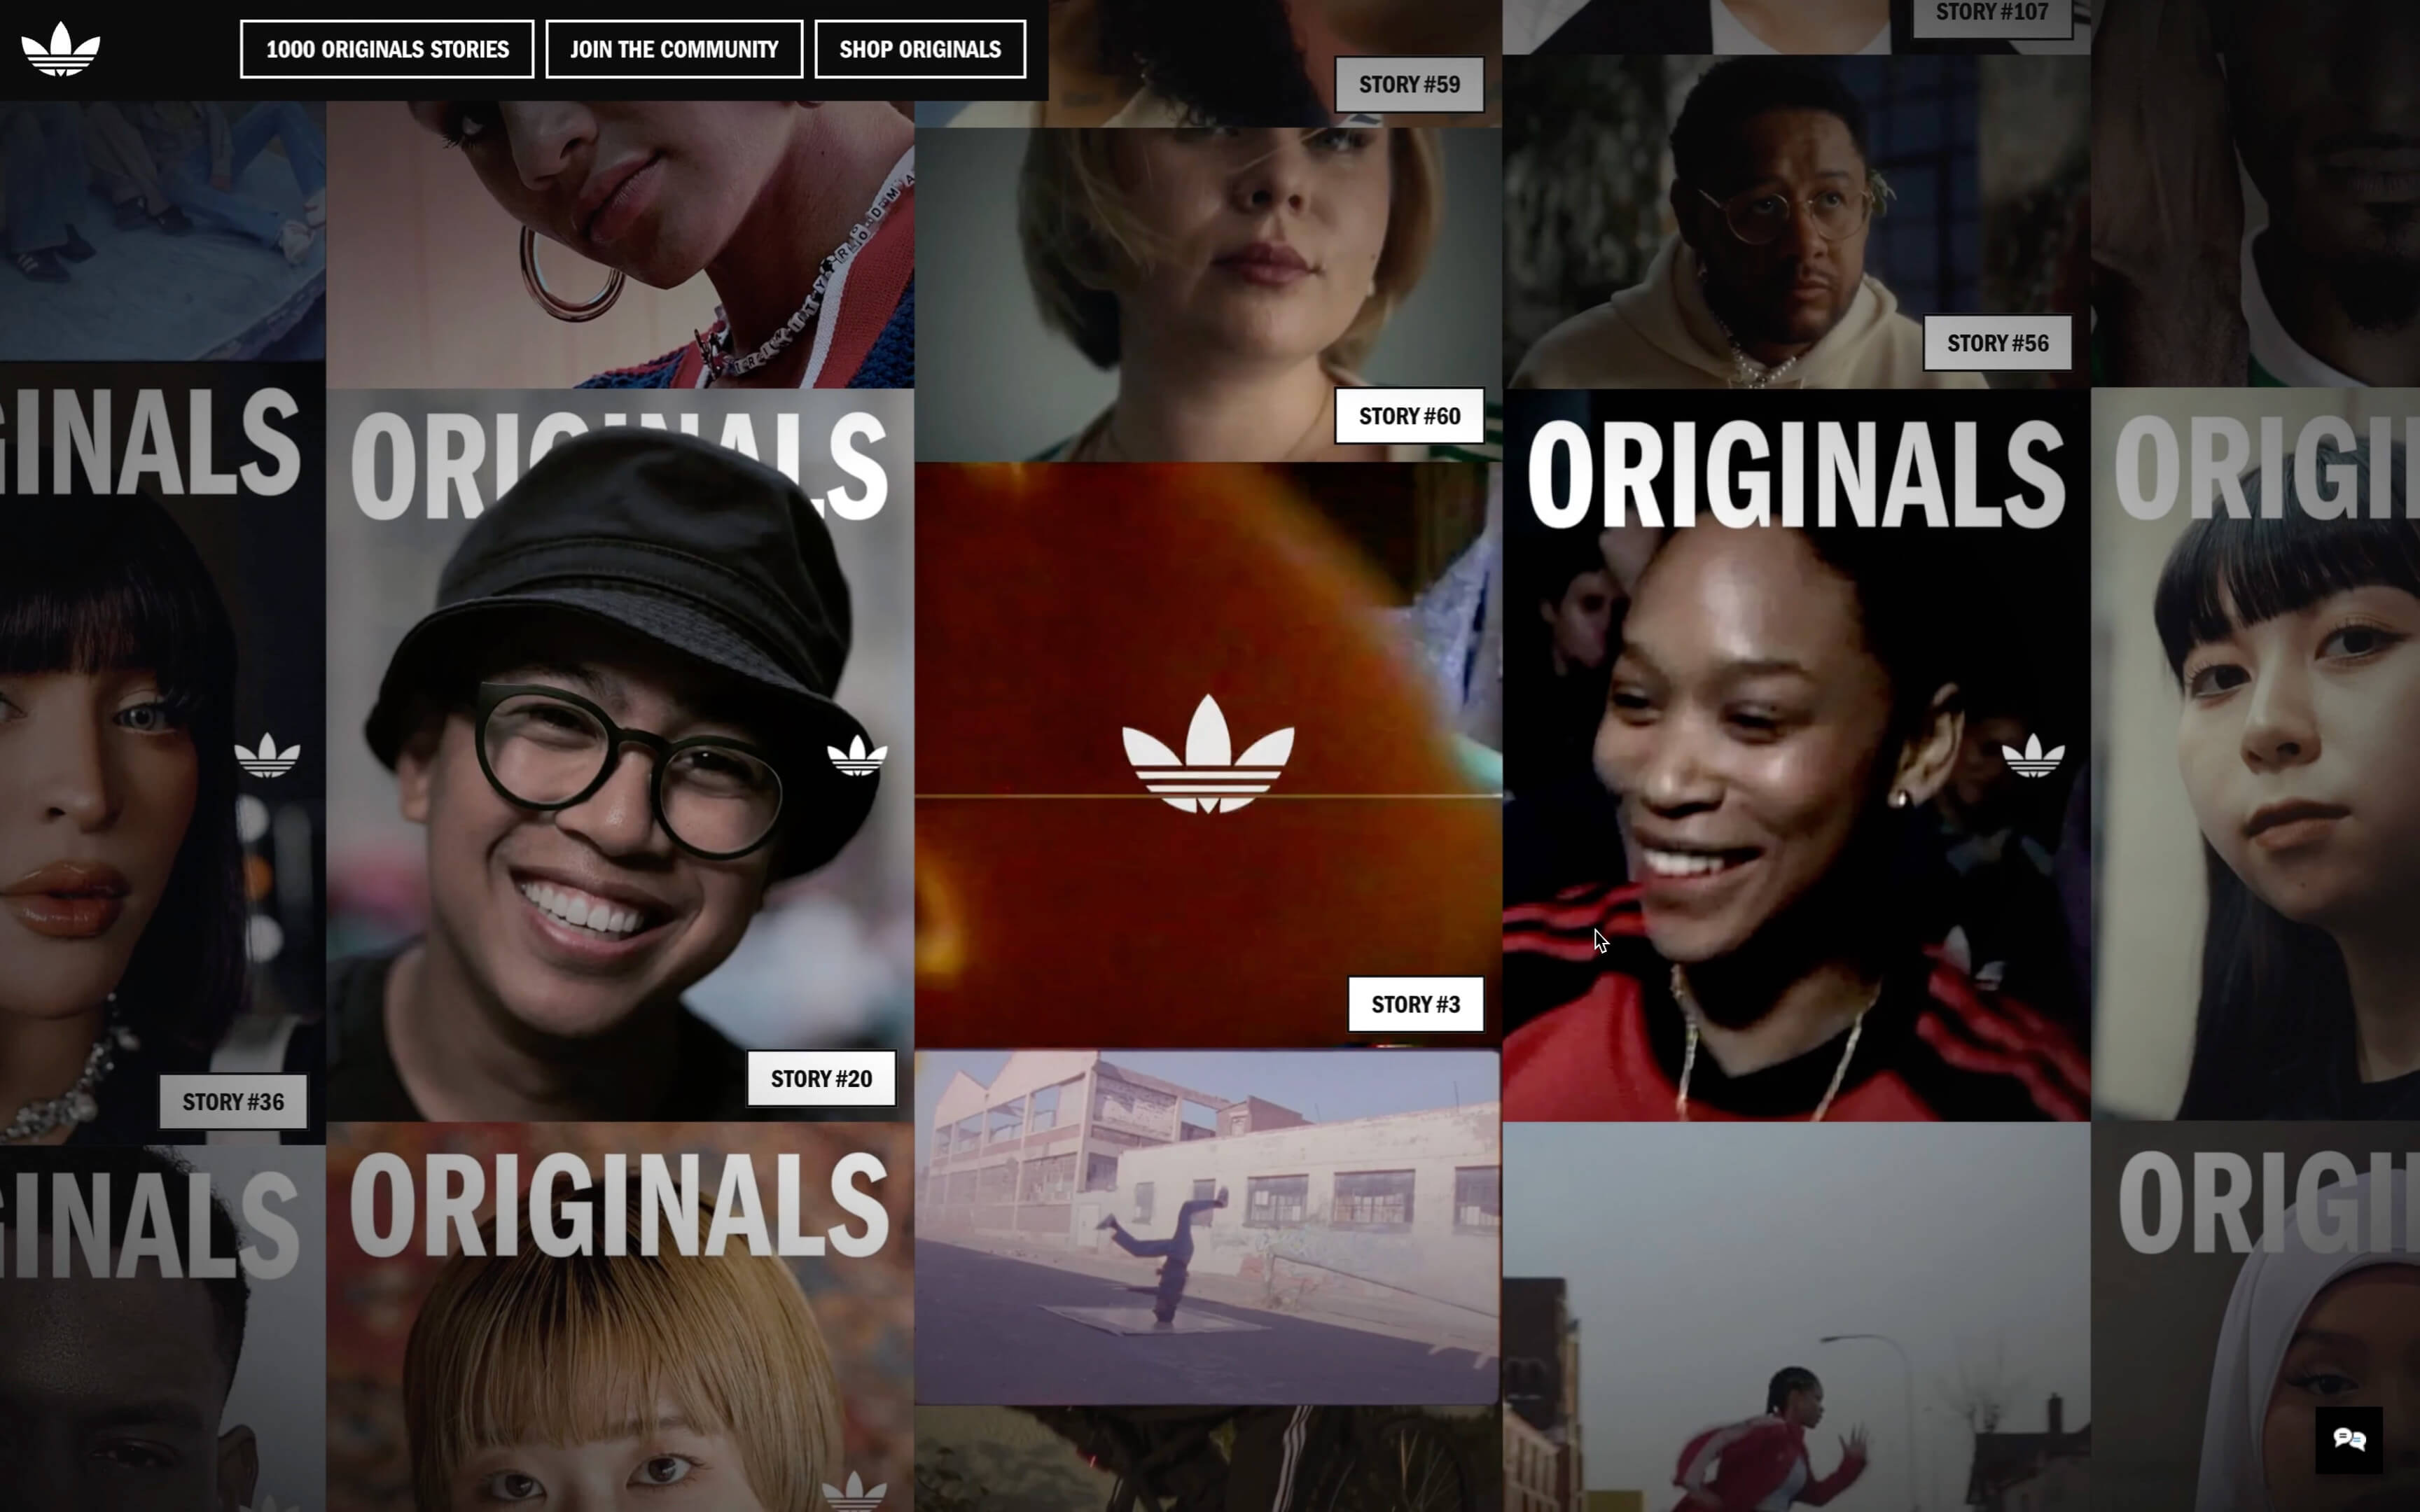 Adidas - 1000 Originals Stories